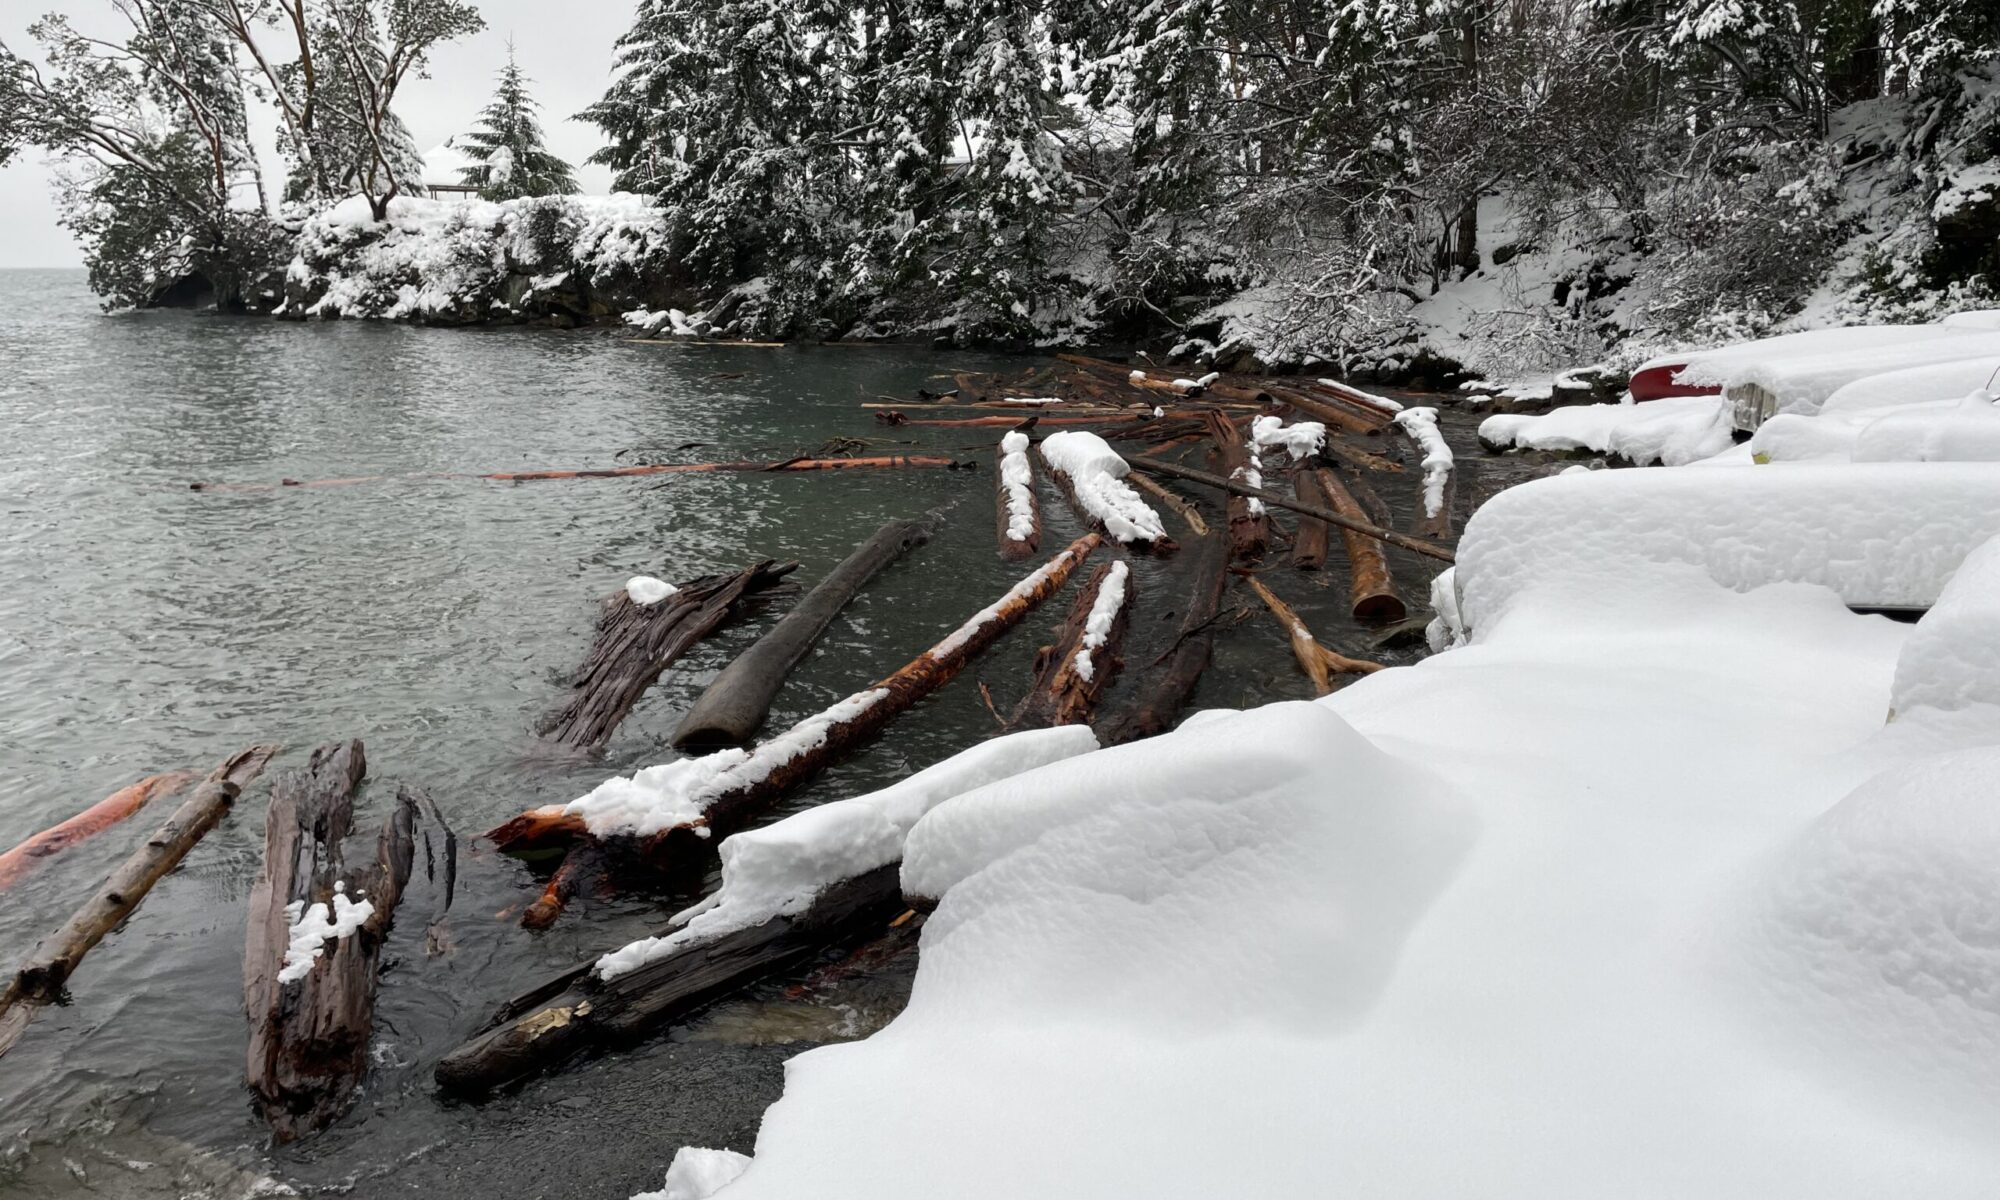 David Cove log jam in the winter